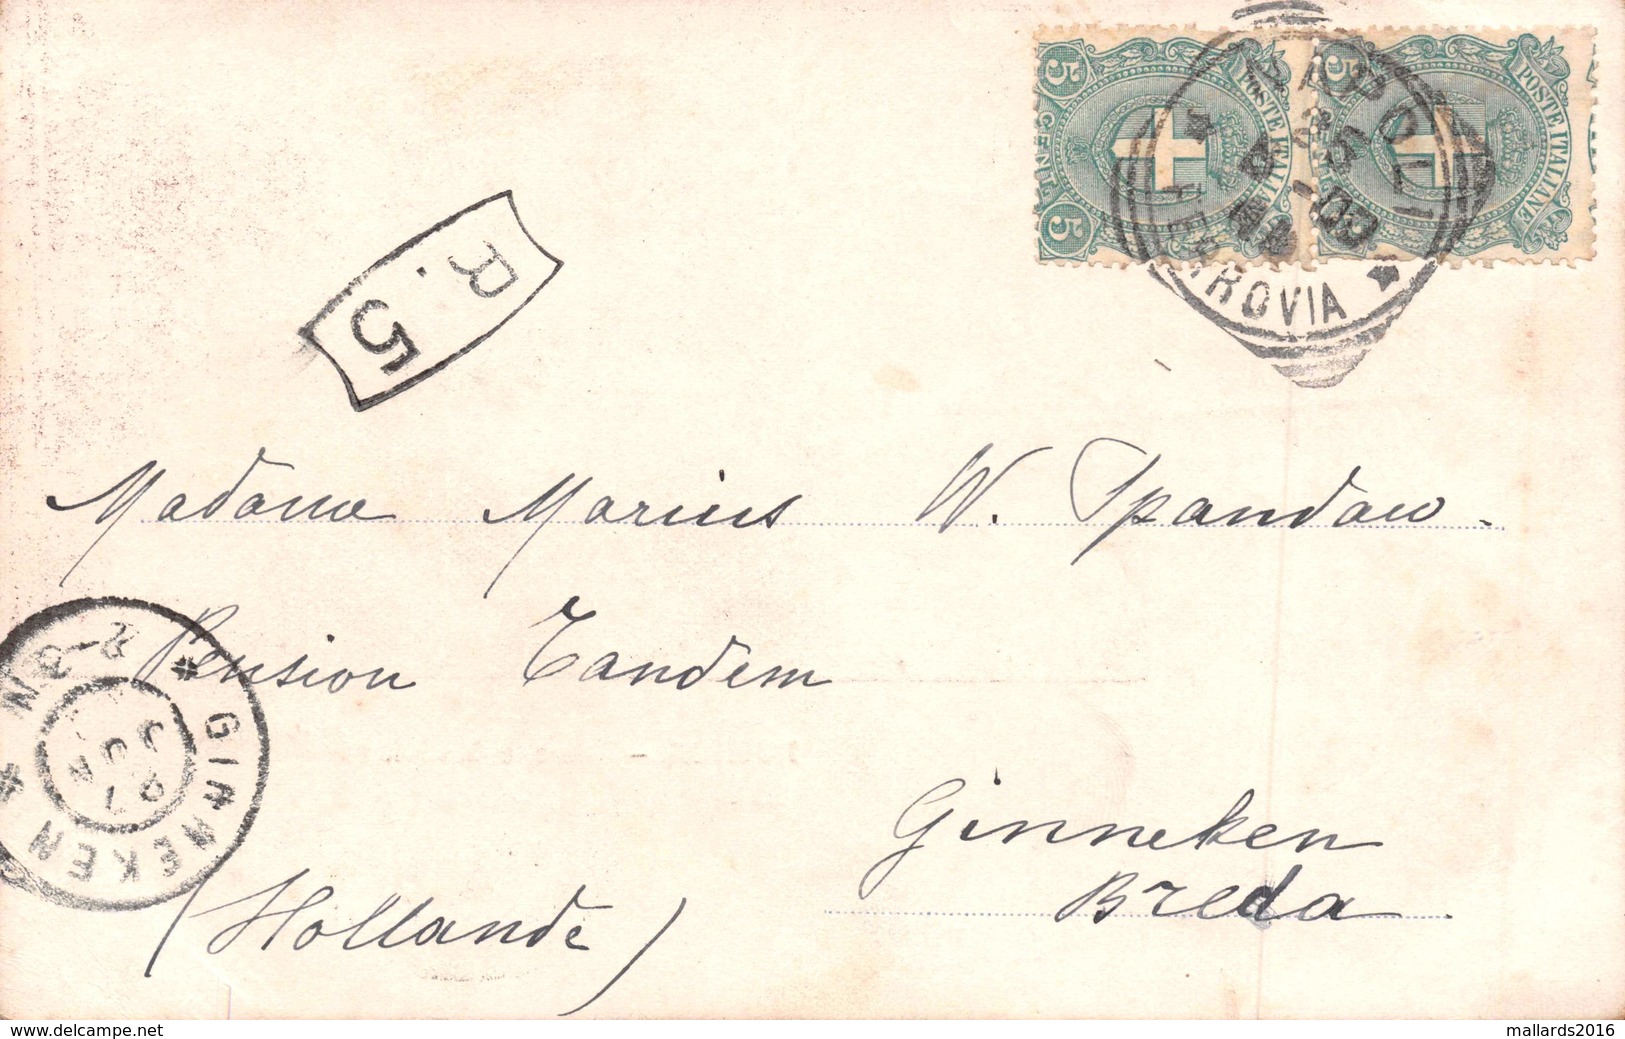 ESPOSIZIONE D'IGIENE NAPOLI 1900 - POSTED JUNE 1900 ~ A 120 YEAR OLD POSTCARD #21421 - Napoli